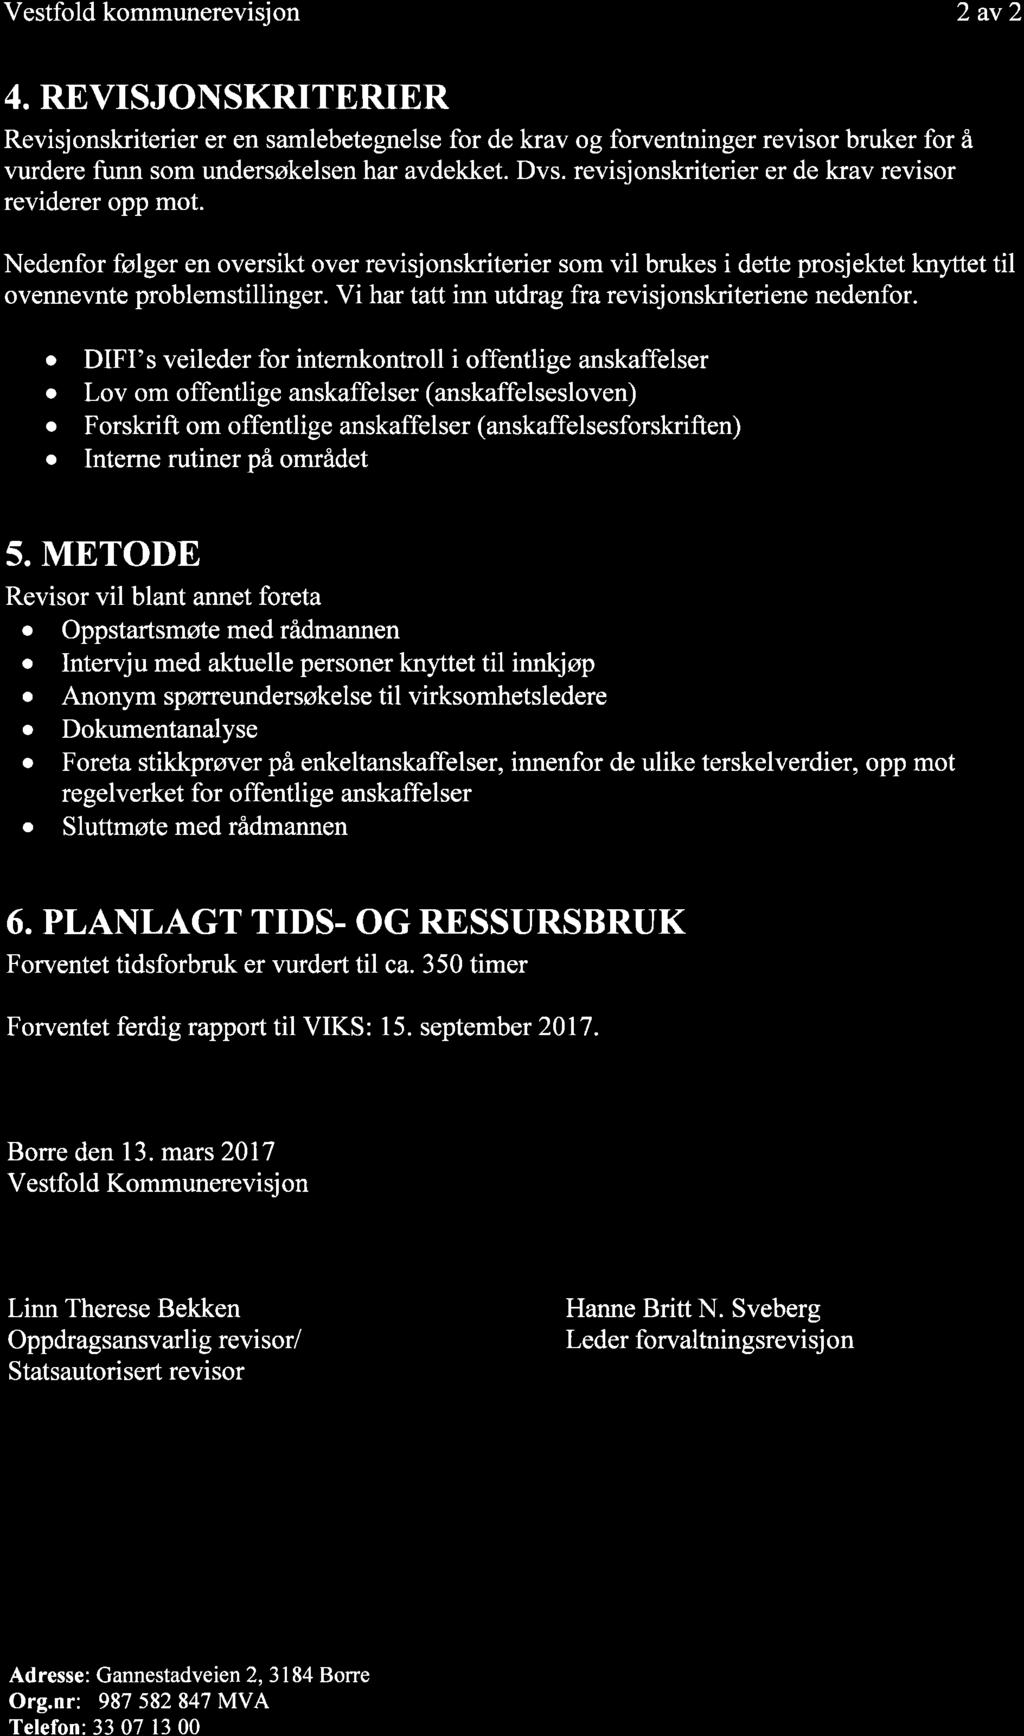 11/17 Prosjektplan forvaltningsrevisjon Offentlige anskaffelser - 17/00091-3 Prosjektplan forvaltningsrevisjon Offentlige anskaffelser : Prosjektplan - Offentlige anskaffelser Vestfold kommunerevisj